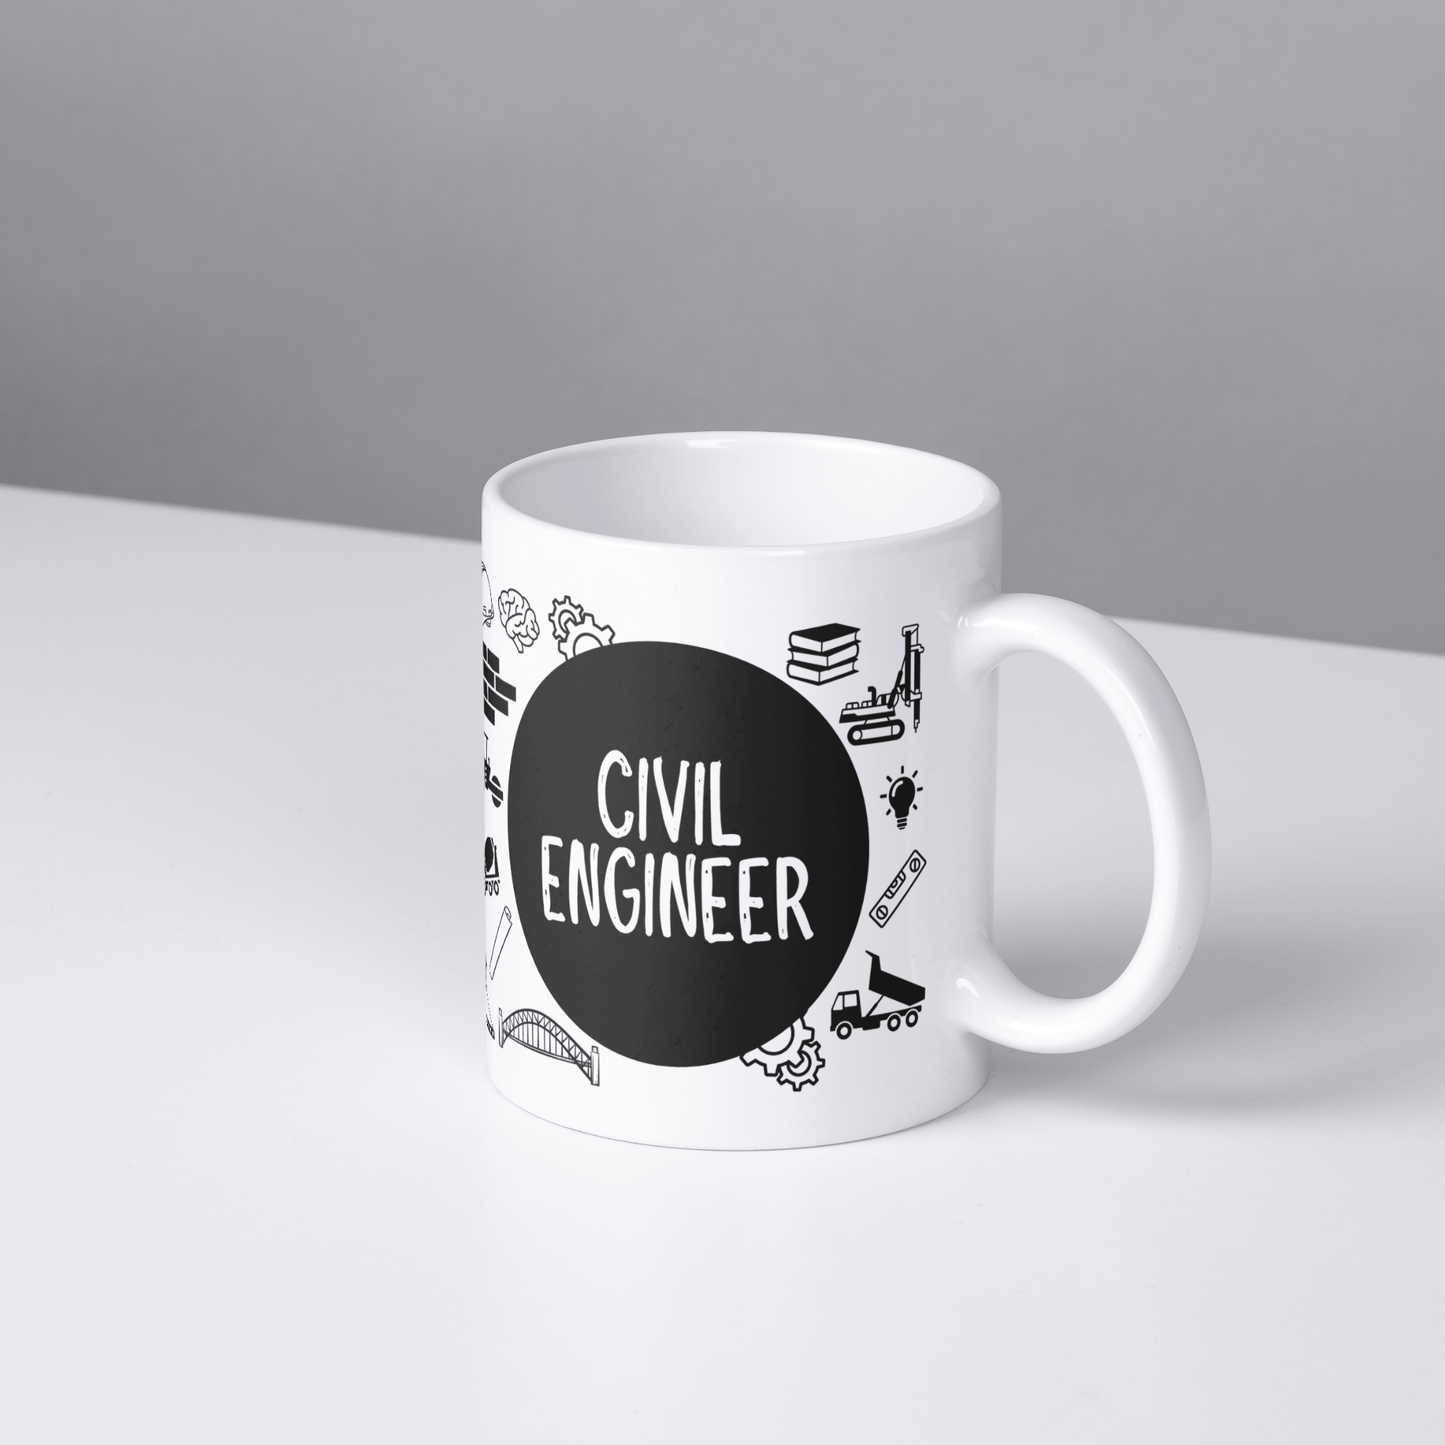 Civil Engineer Mug